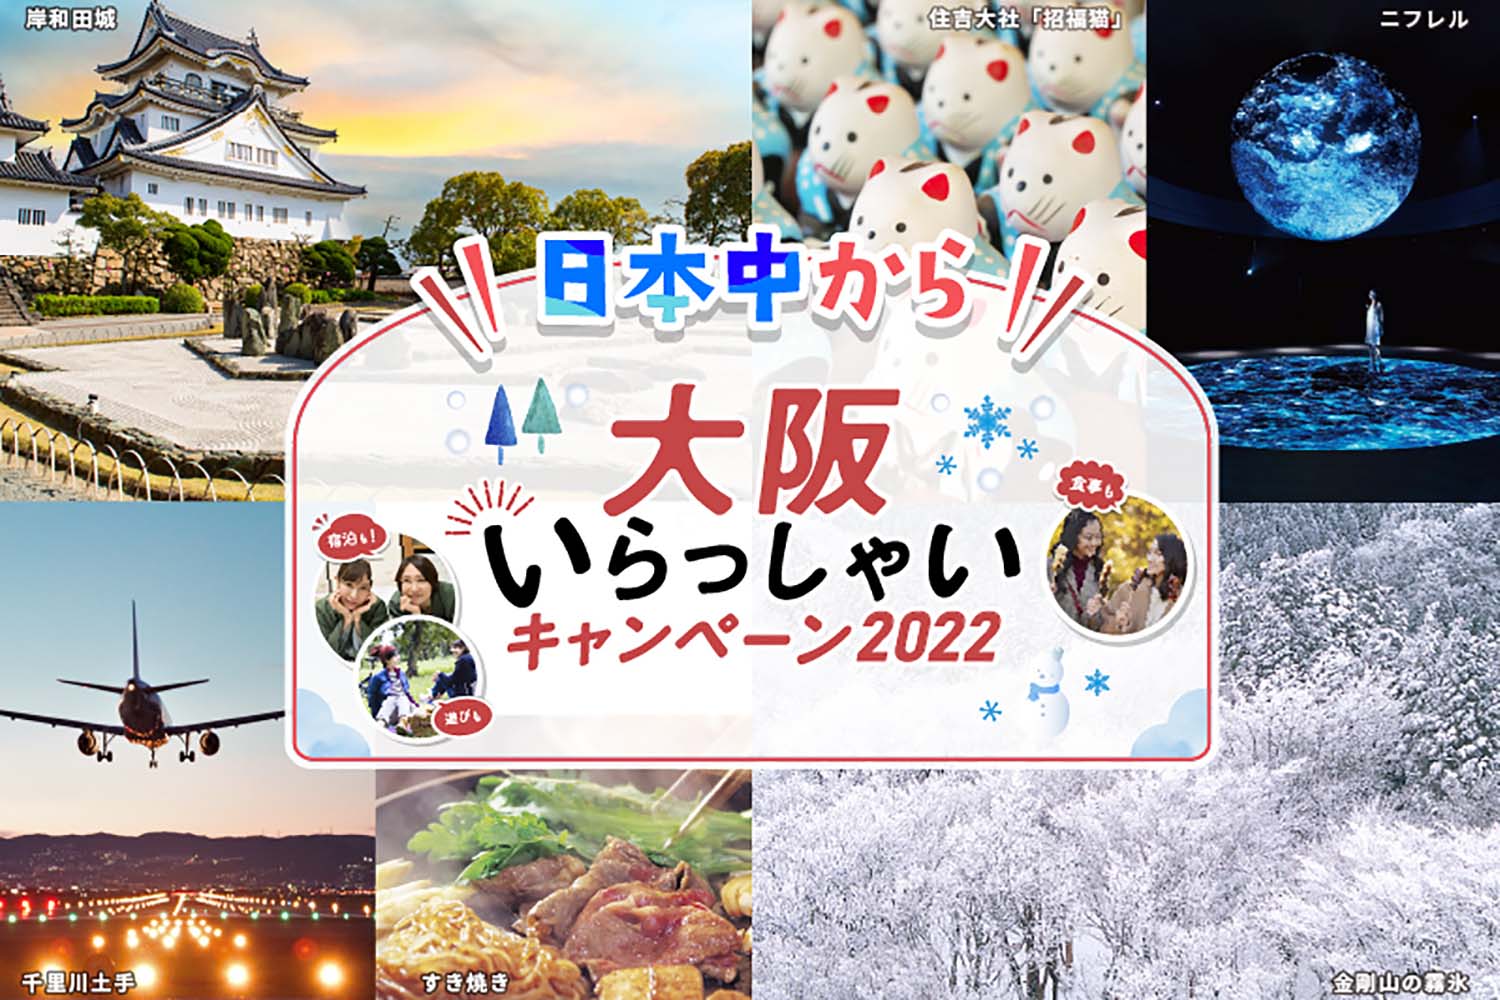 【日本中から大阪いらっしゃいキャンペーン2022】延長のお知らせ